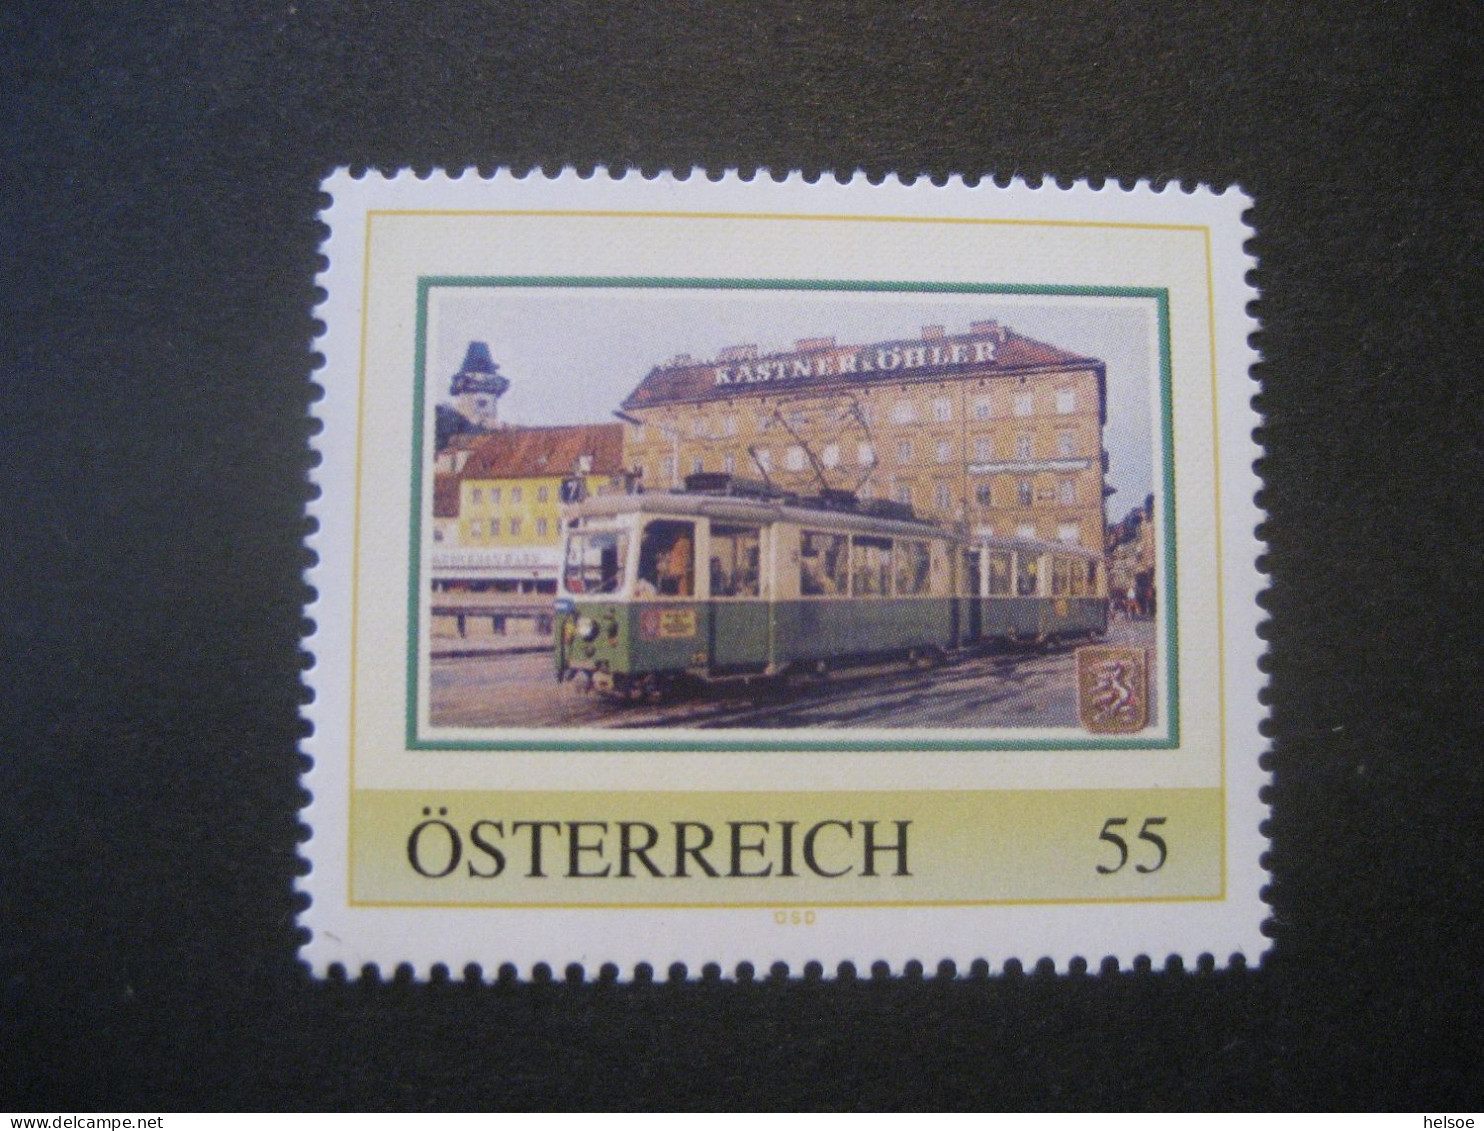 Österreich- PM Grazer Straßenbahn Ungebraucht - Personnalized Stamps